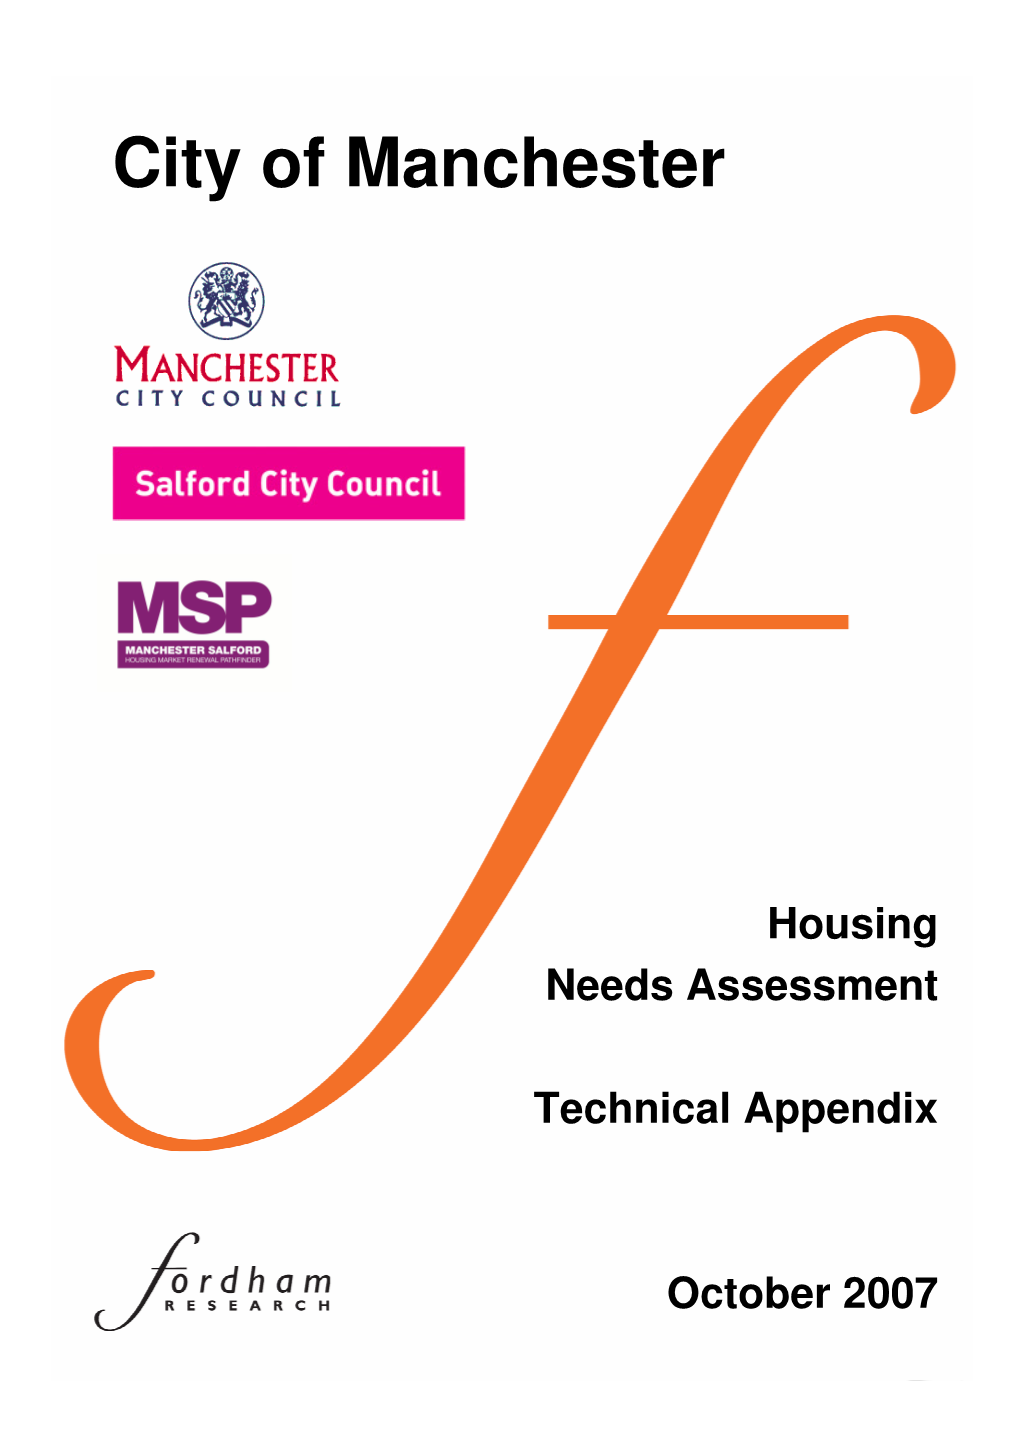 Manchester Housing Needs Assessment - Technical Appendix